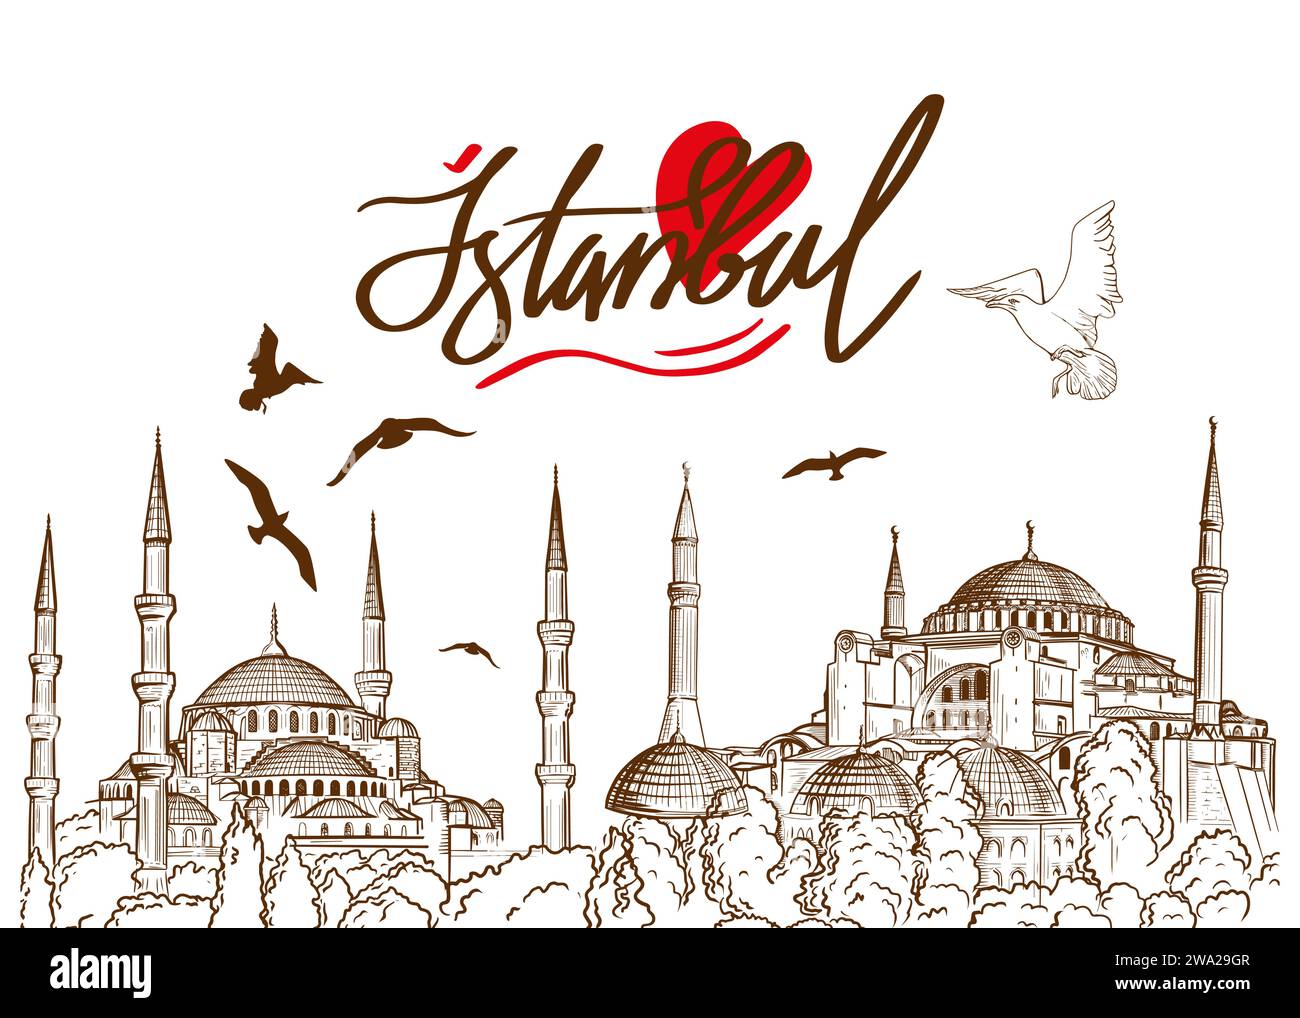 Skizzenzeichnung einer Ayasofya, Hagia Sophia Moschee und Blauen Moschee, Istanbul, Türkei. Design-Elemente türkischer Touristenattraktionen. Stock Vektor